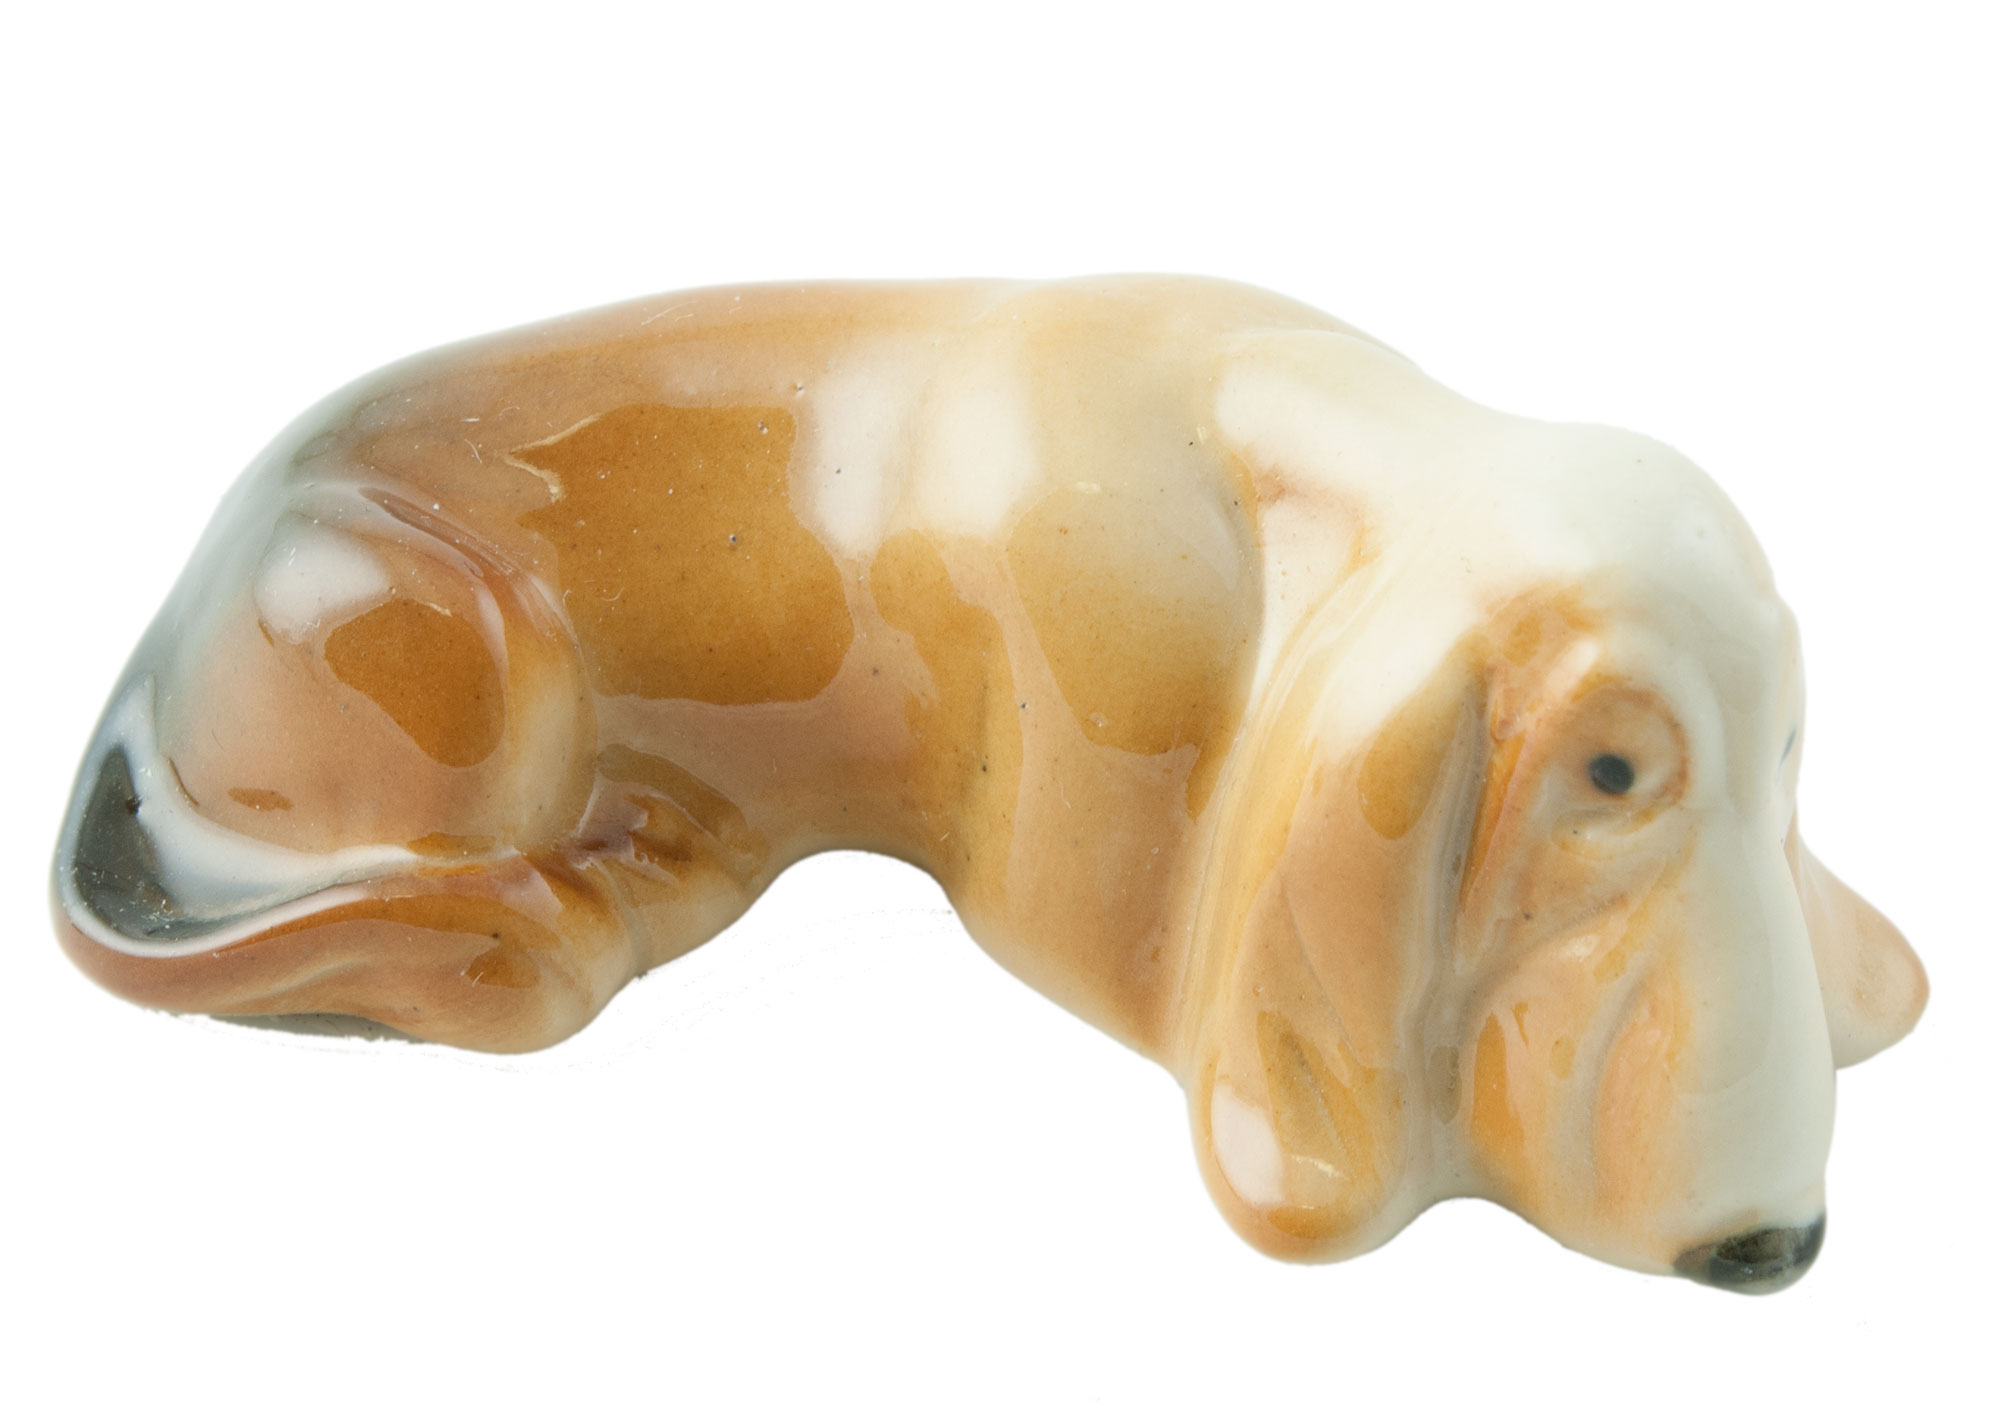 Buy Basset Hound Porcelain Figurine at GoldenCockerel.com